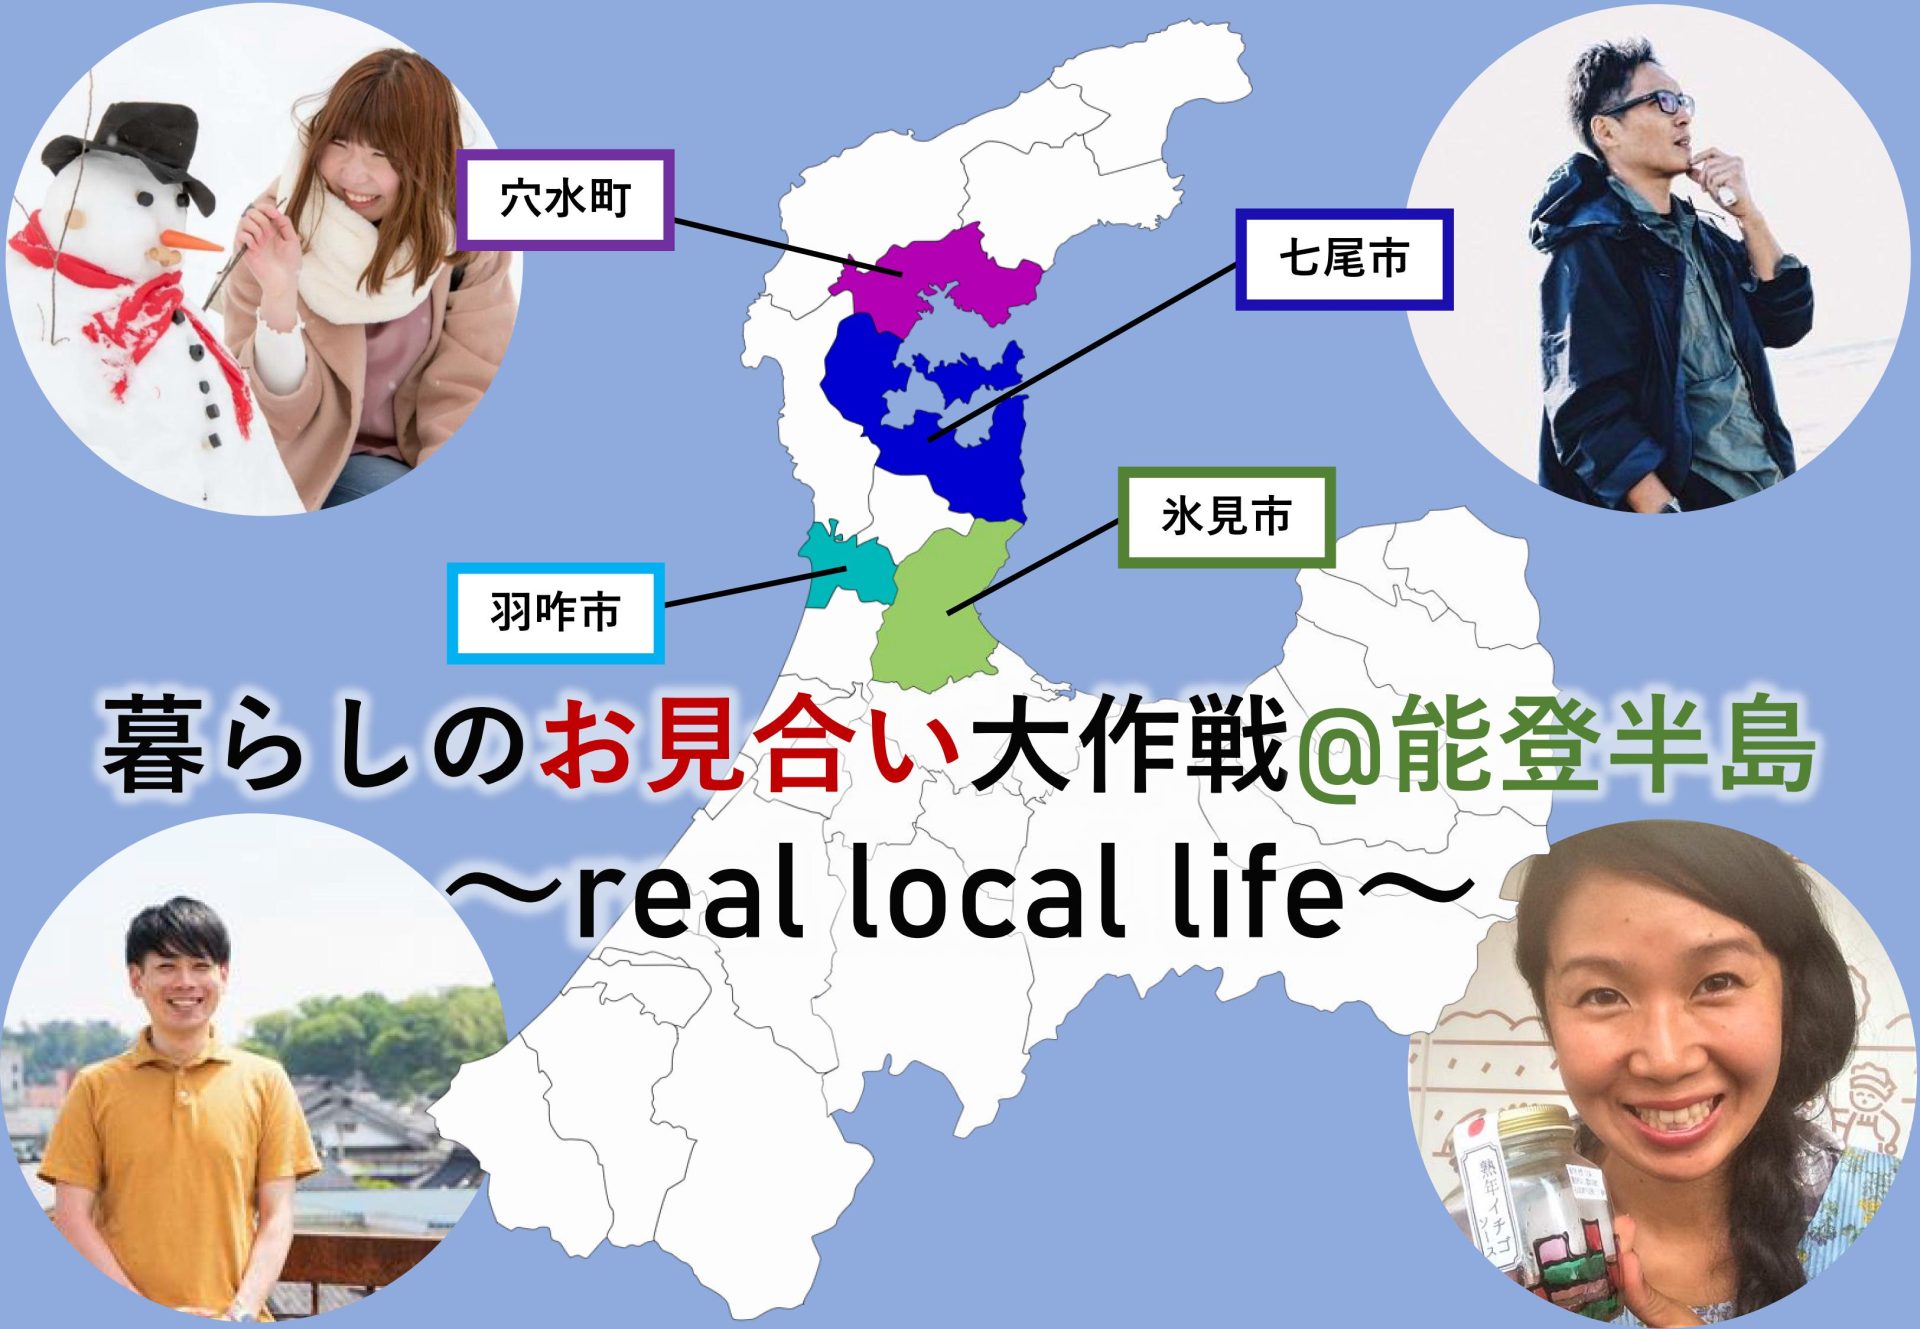 暮らしのお見合い大作戦@能登半島~real local life~ | 移住関連イベント情報